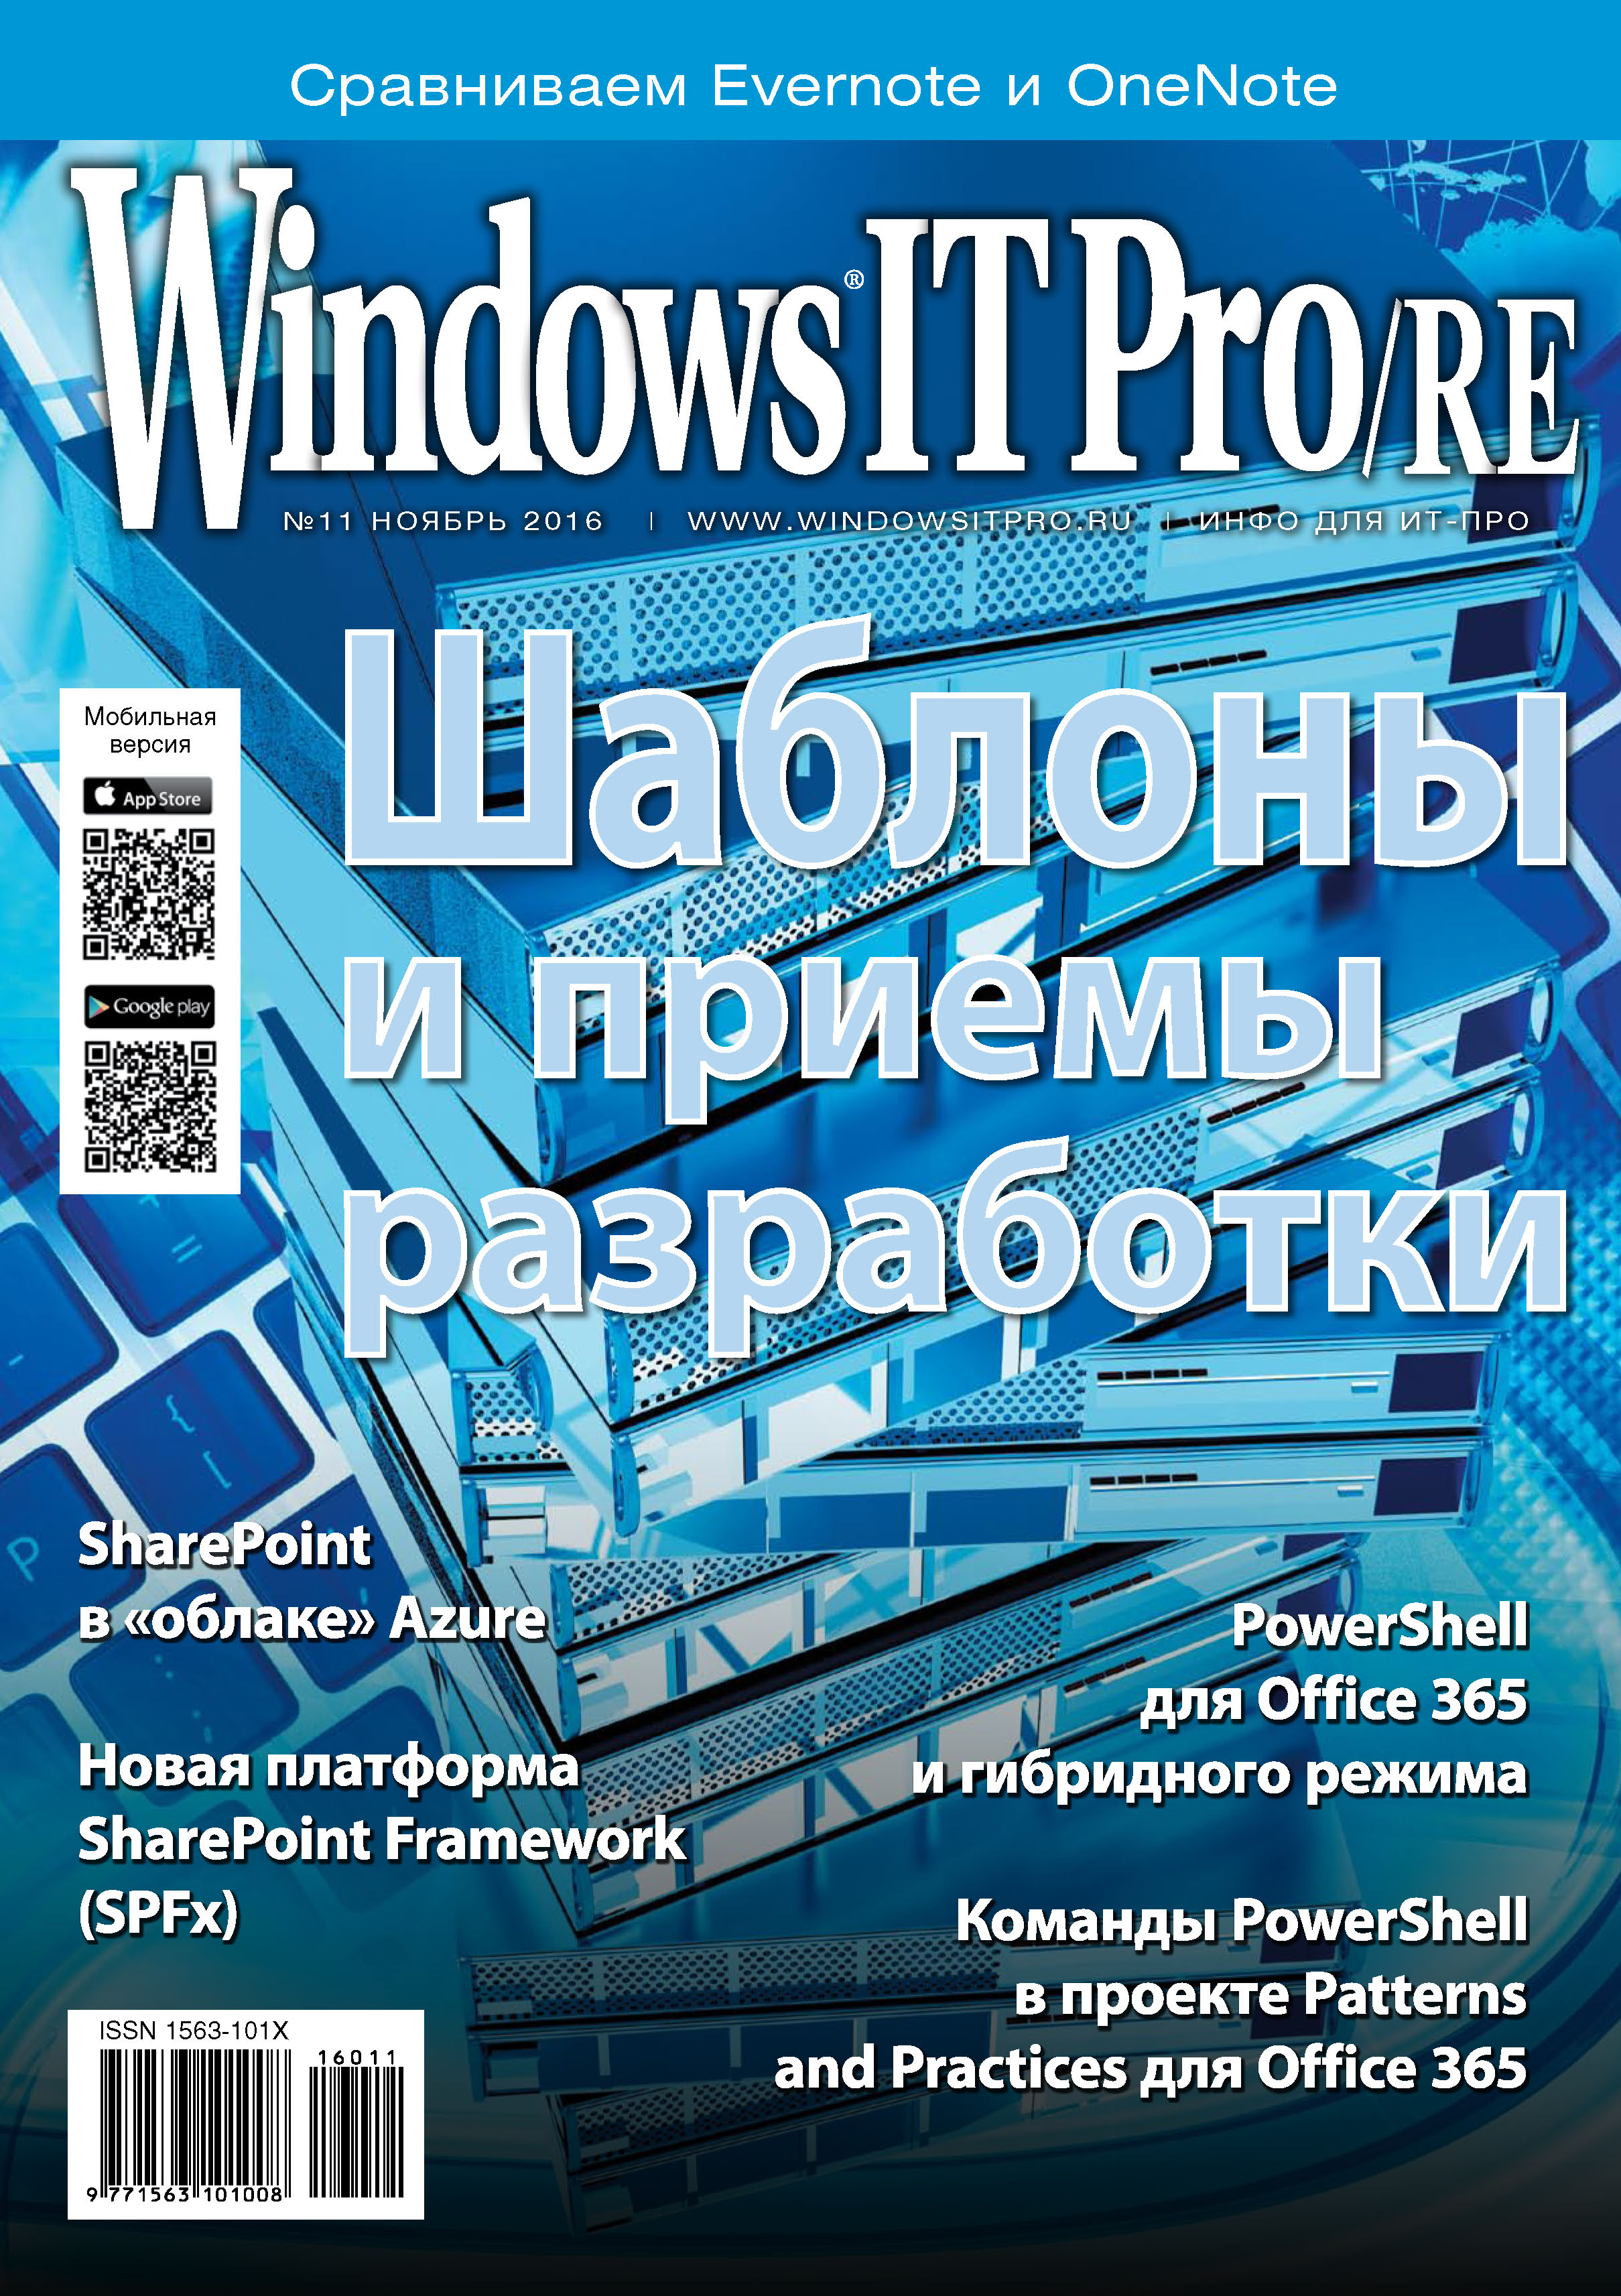 Windows IT Pro/RE№11/2016